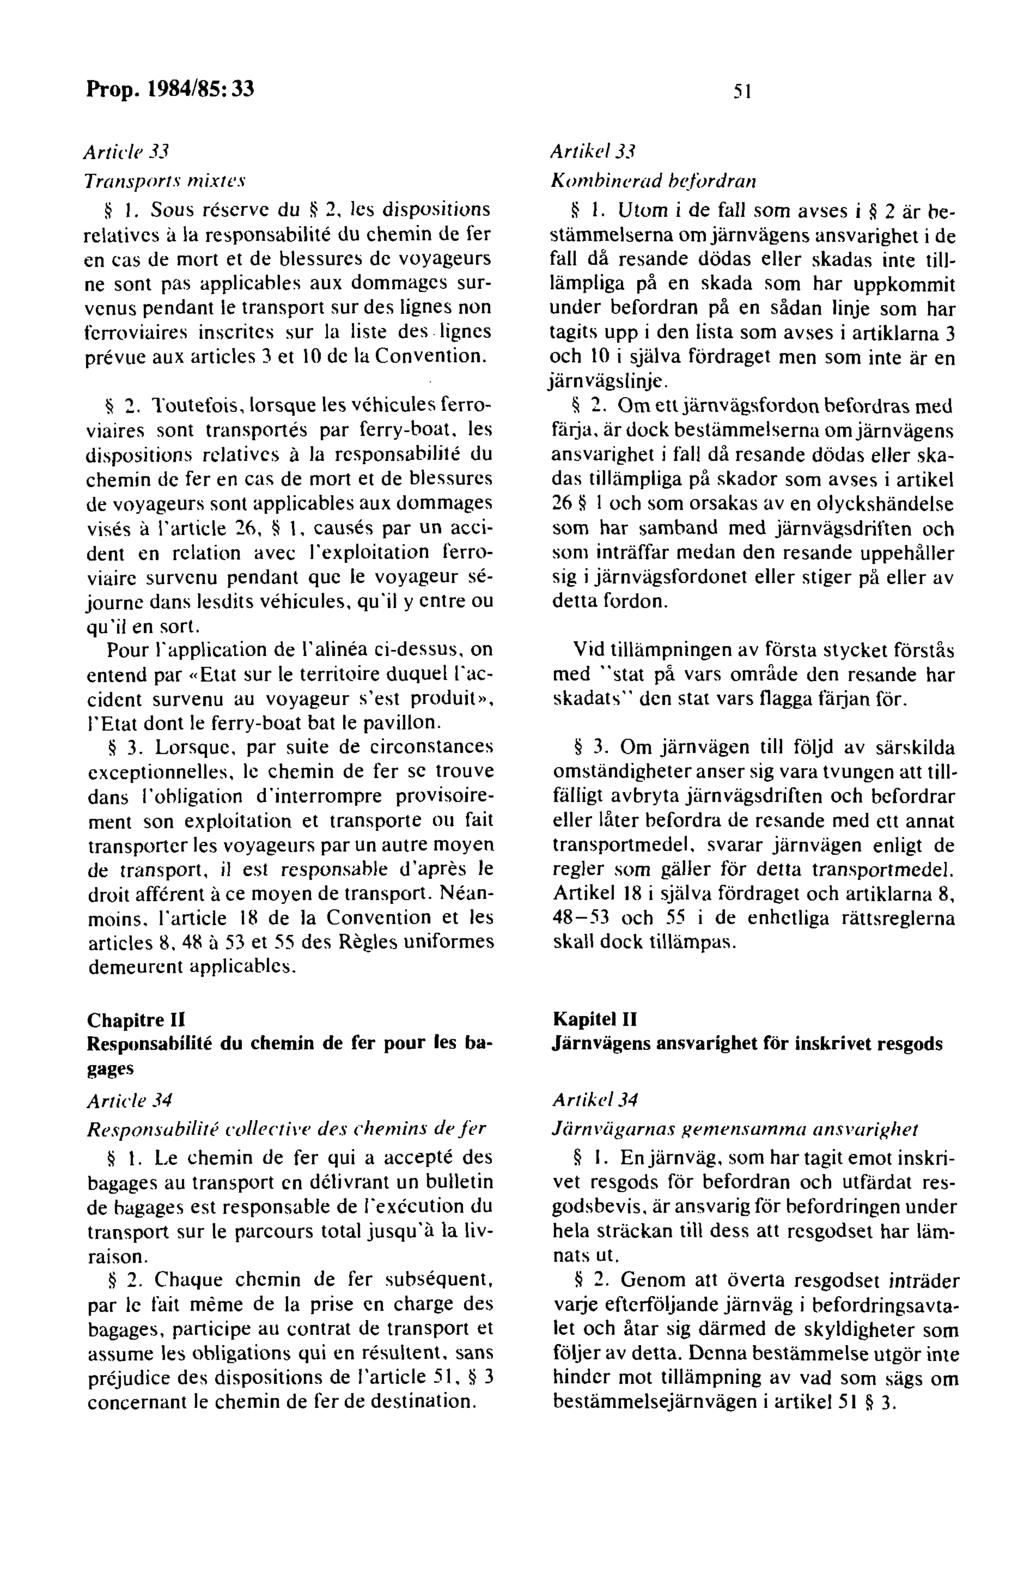 Article 33 Transport.i mixtes I. Sous rcscrvc du ~ 2.